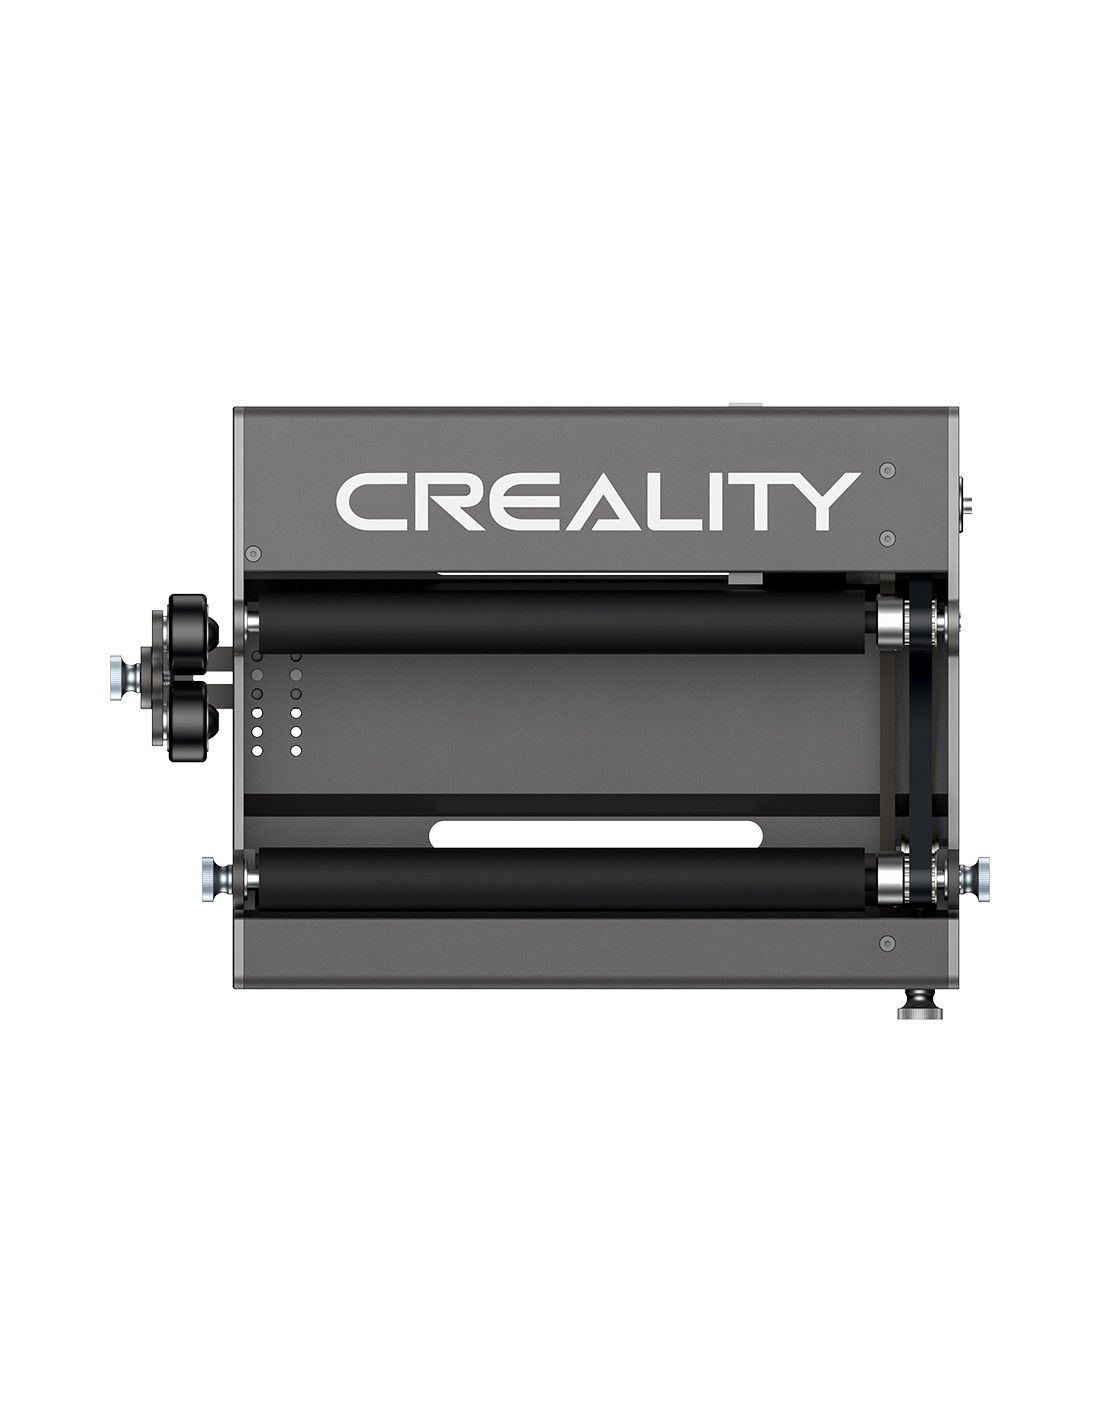 Rodillo giratorio Creality para máquina de grabado láser